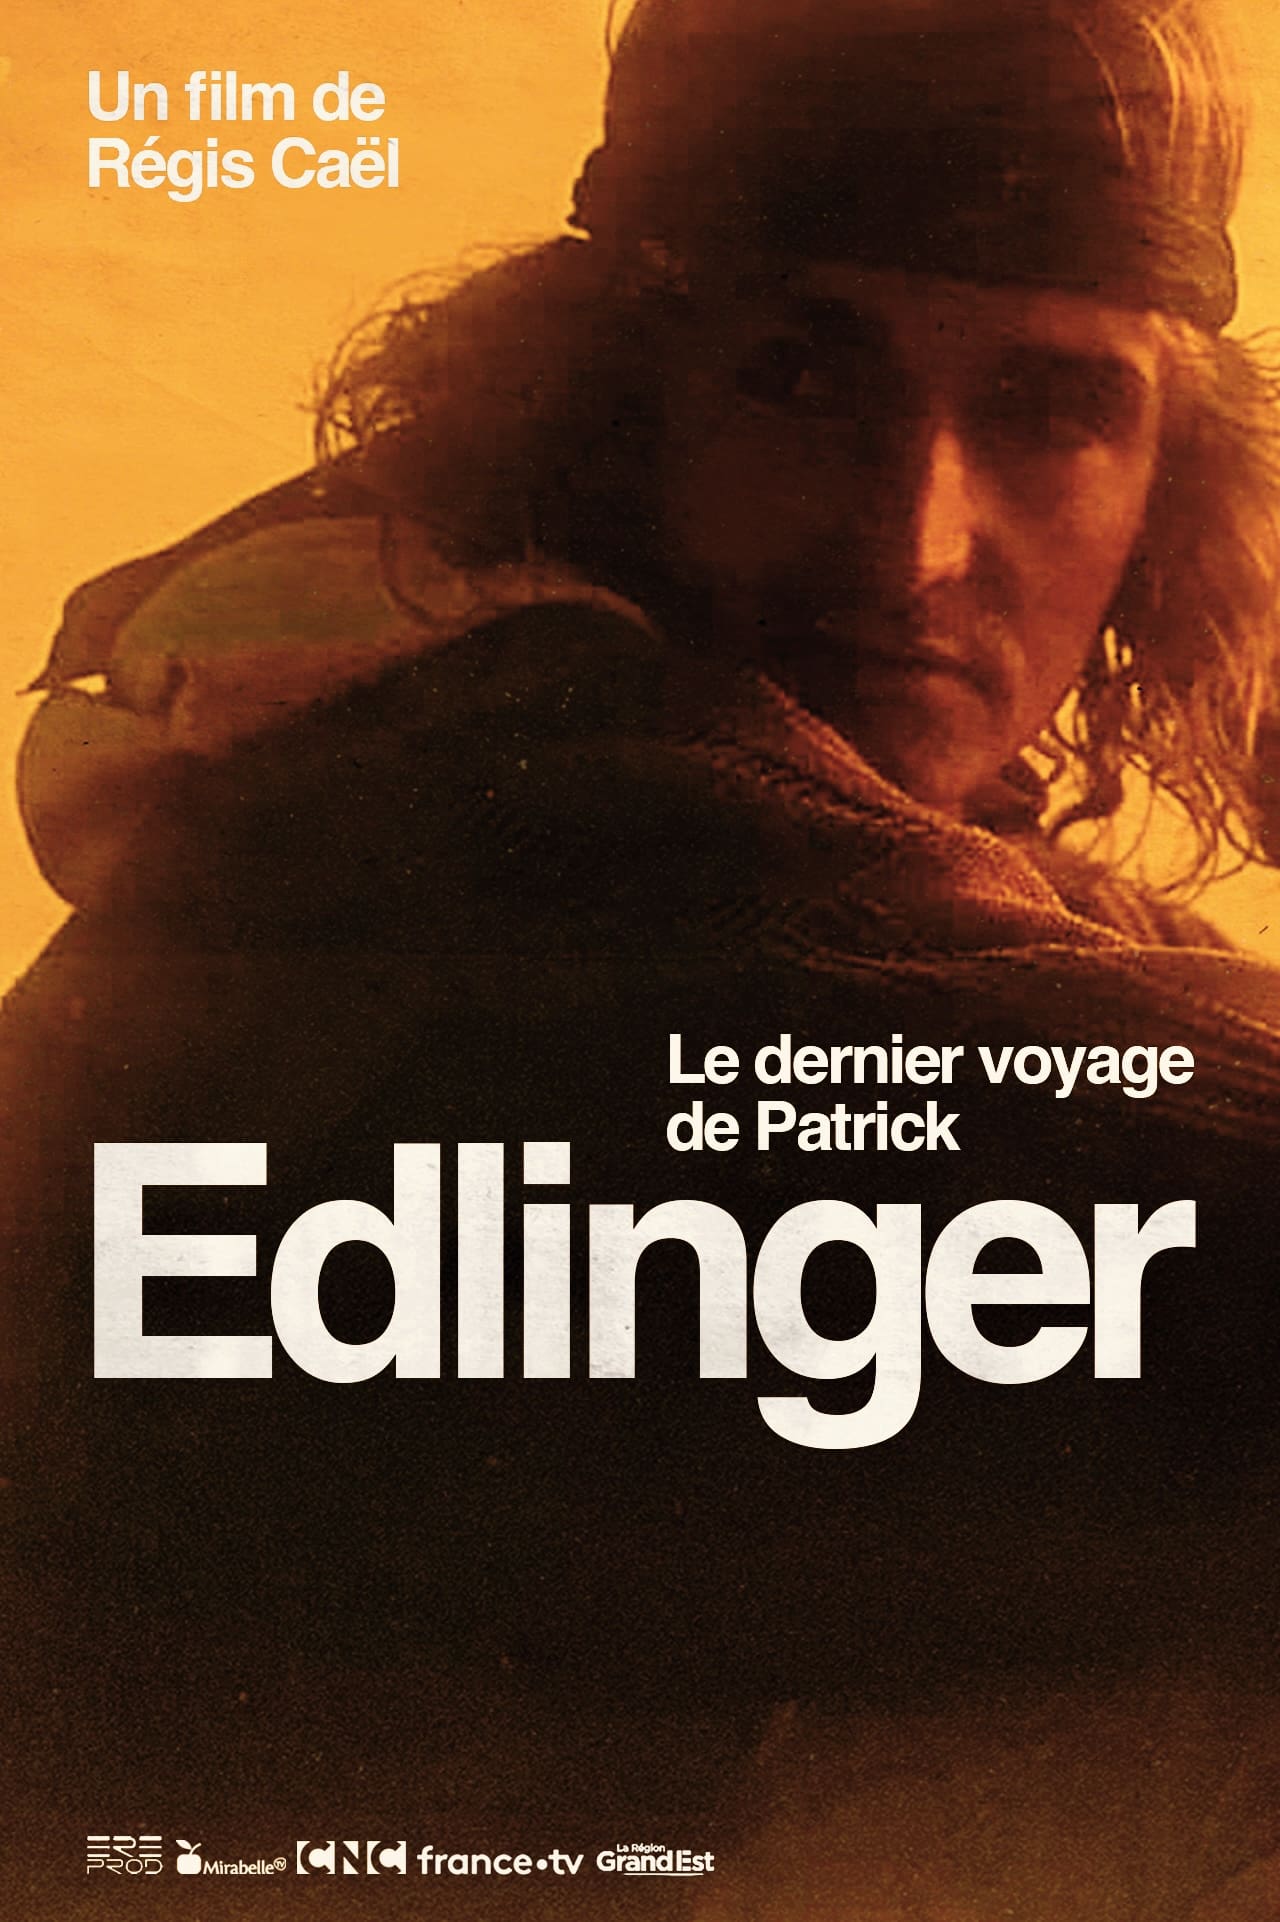 Le Dernier Voyage de Patrick Edlinger